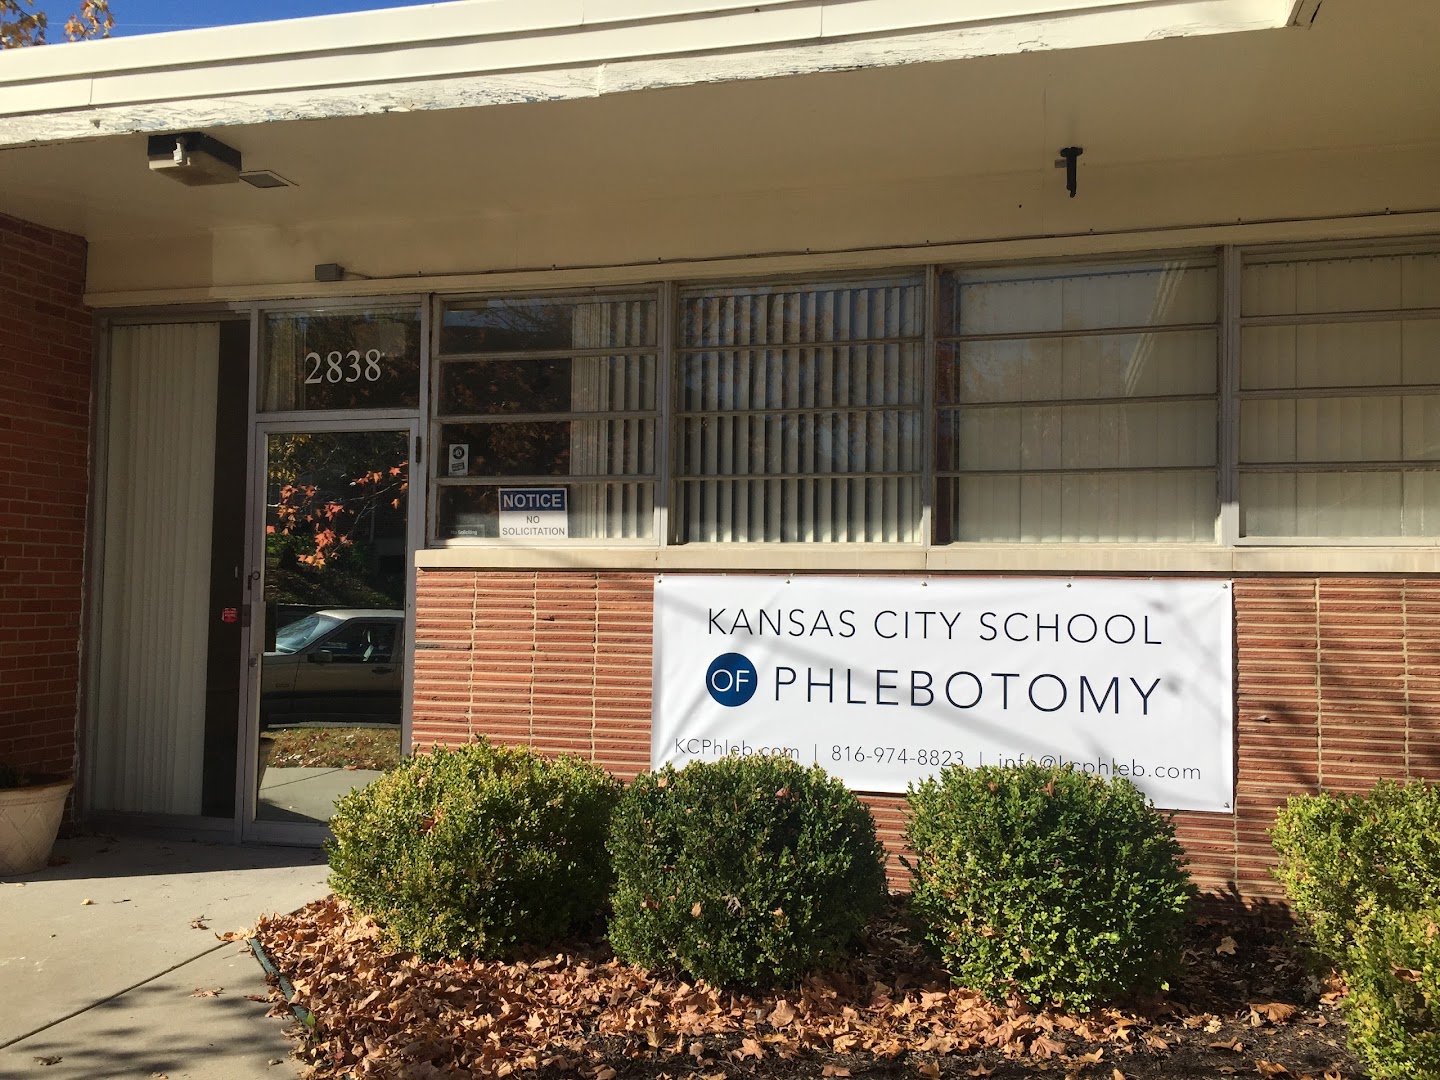 Kansas City School of Phlebotomy